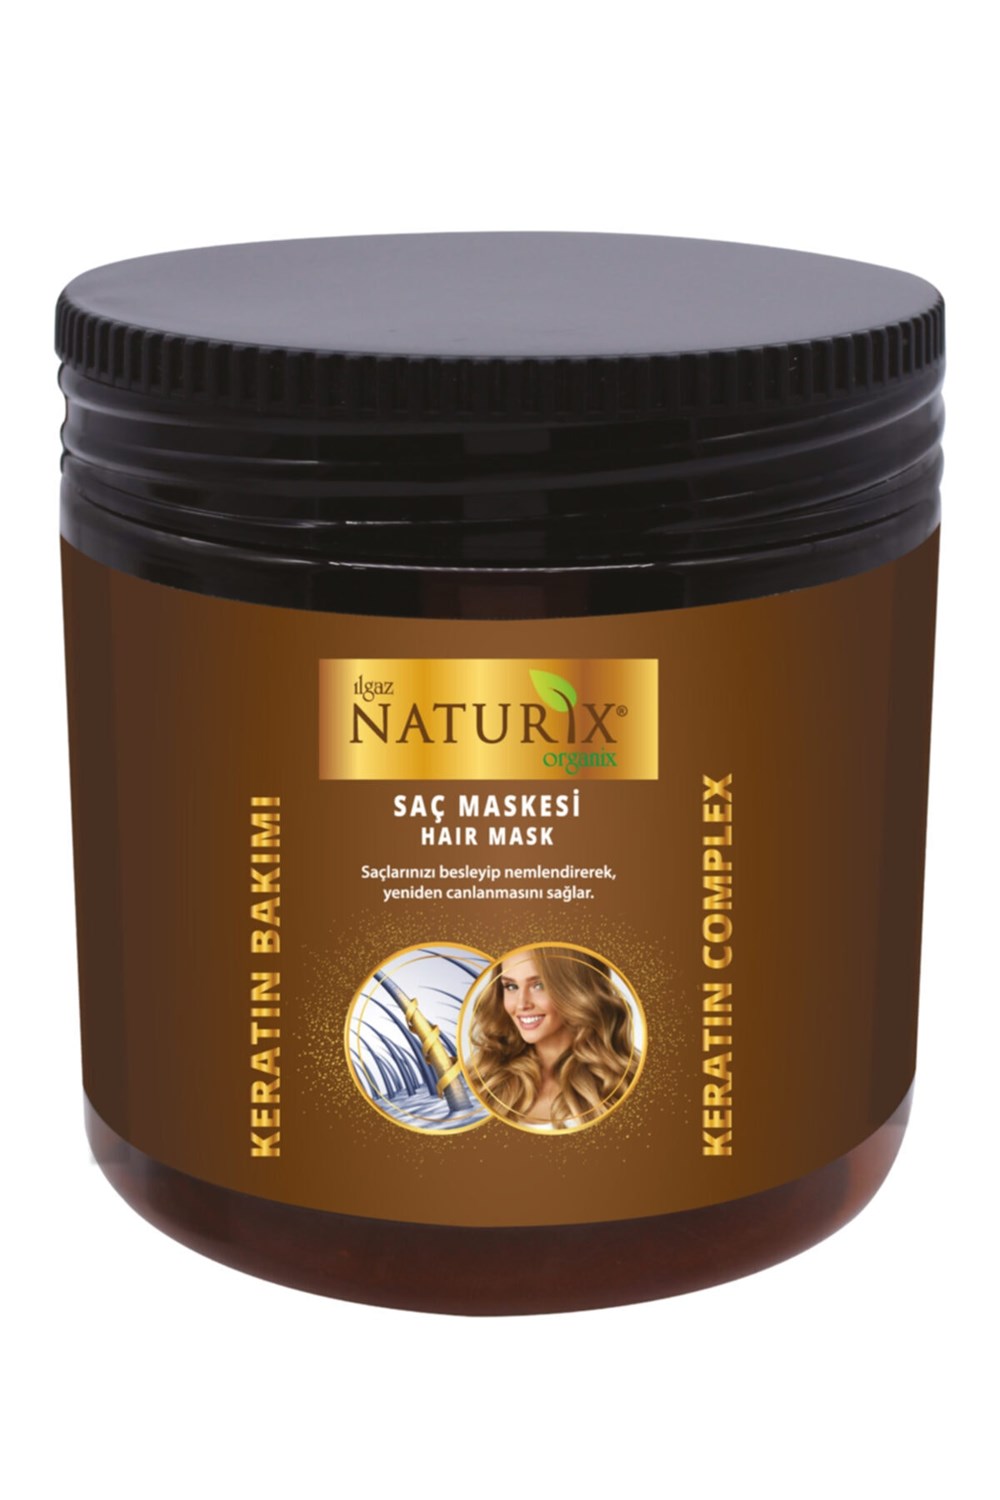 Ilgaz Naturix Organix Tuzsuz Keratin Şampuan 2 Adet 600 ml Onarıcı Bakım  Şampuanı + 500 ml Keratin Bakım Maskes